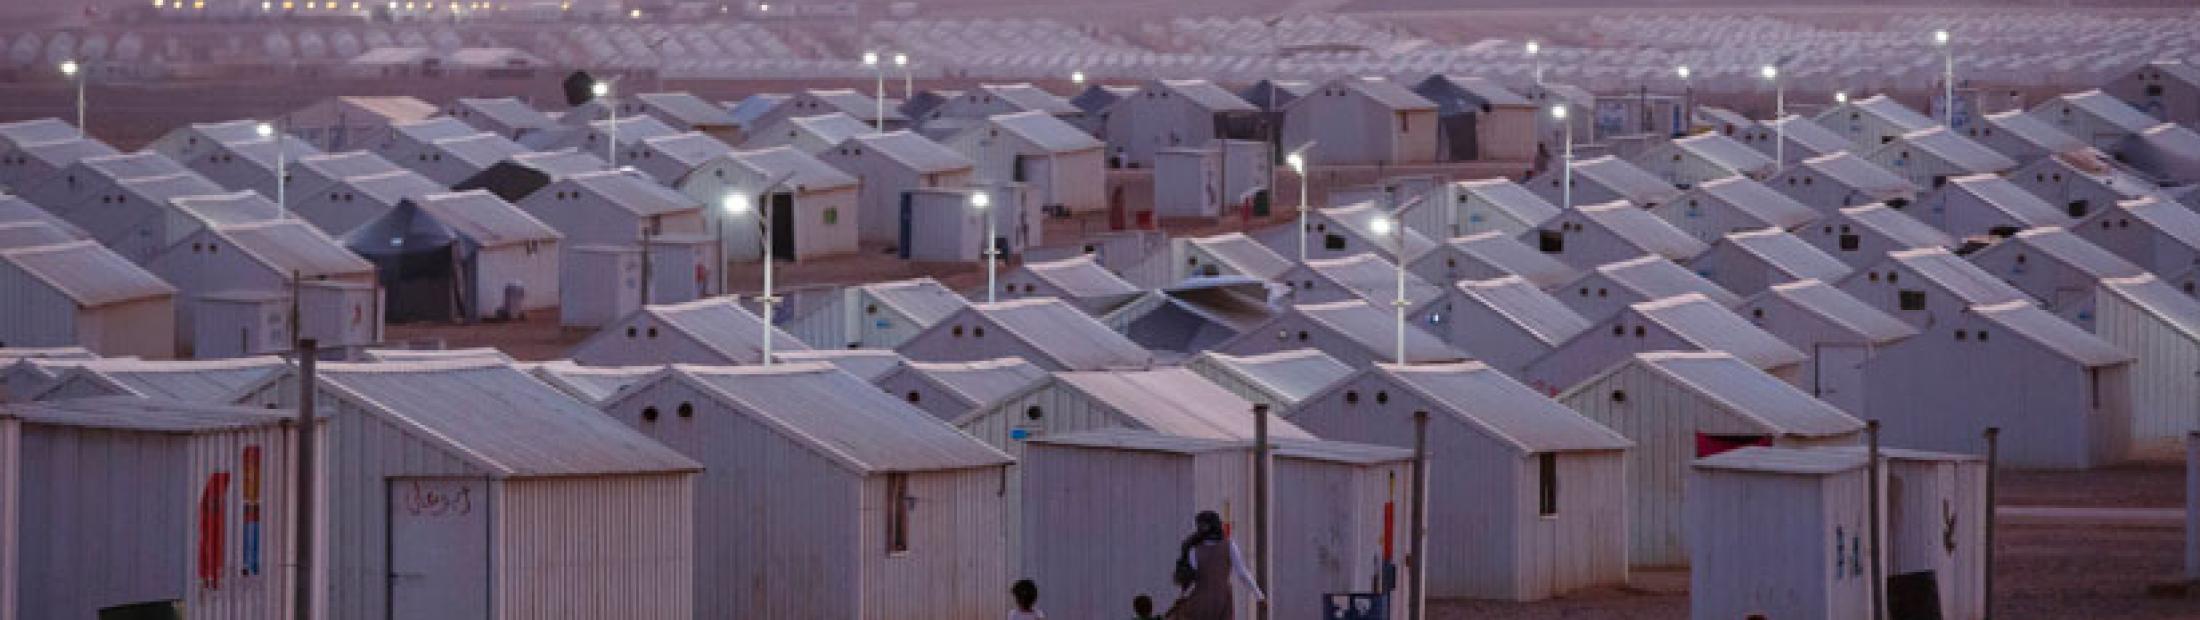 ¿Qué son los campos de refugiados?